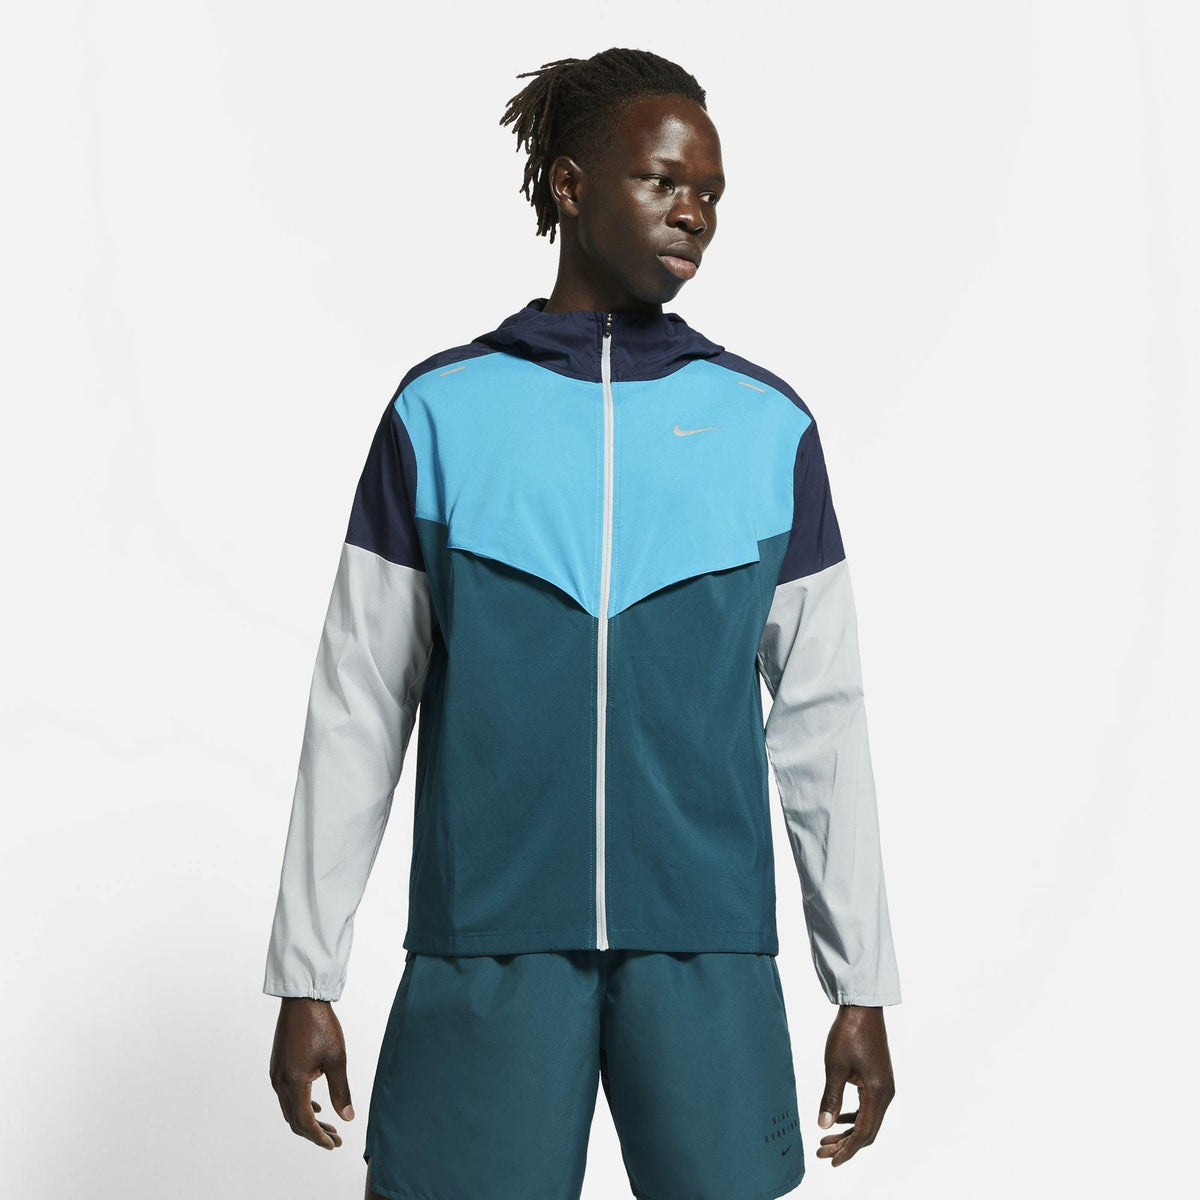 Men's Windrunner Jacket, Nike